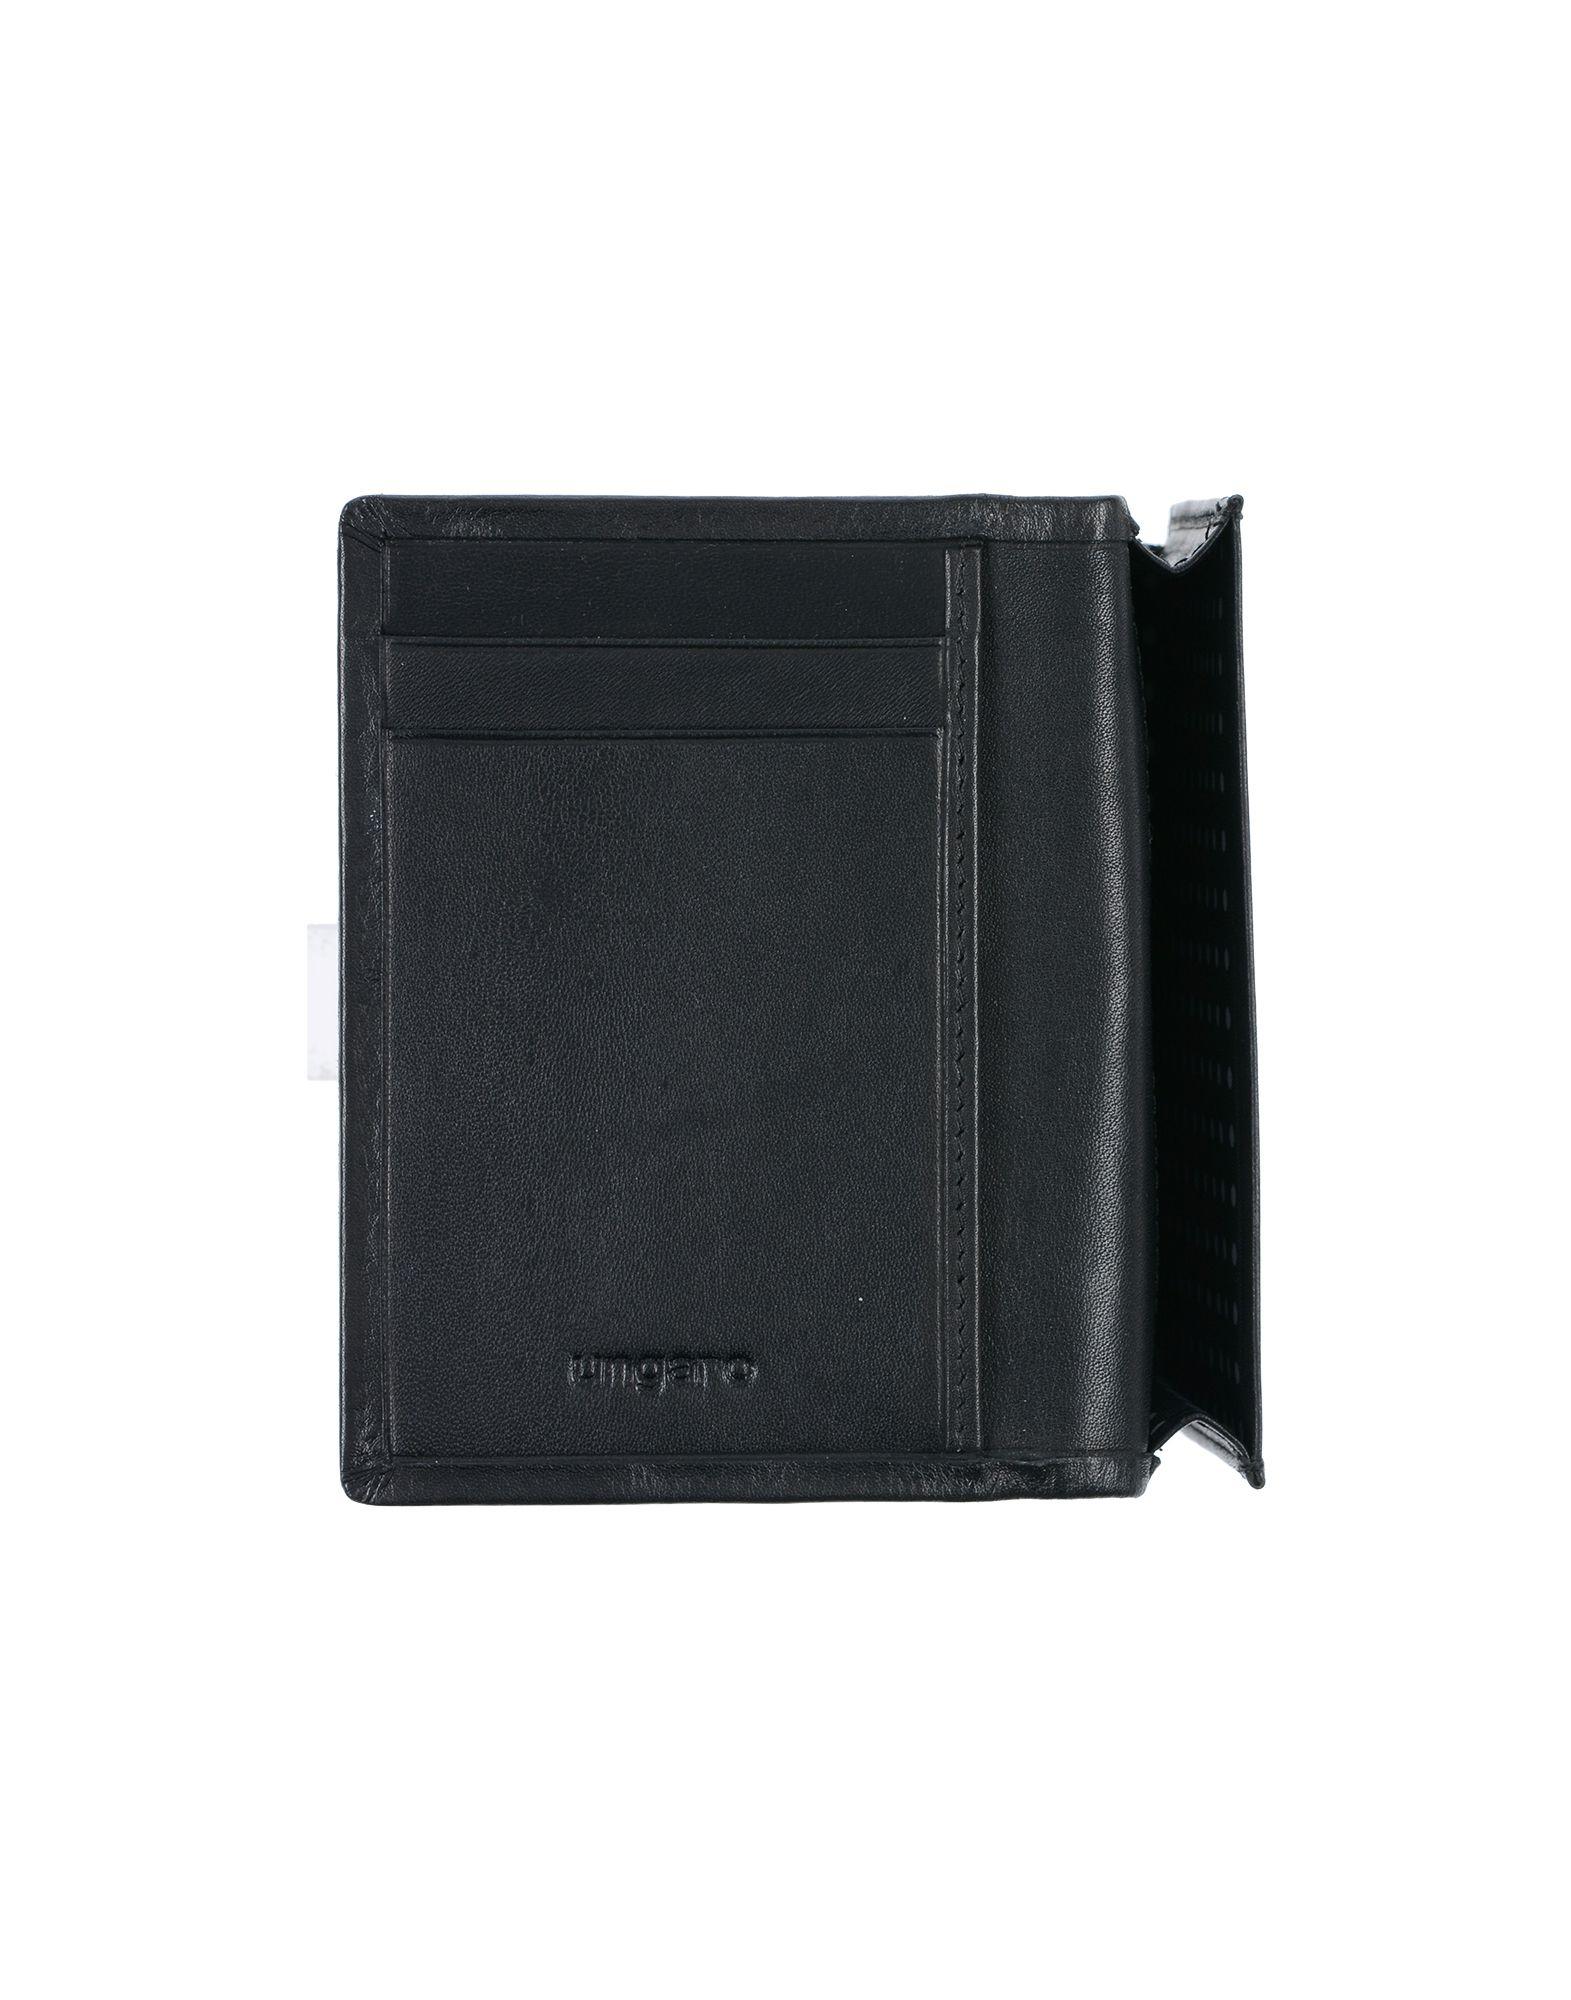 Emanuel Ungaro Leather Wallet in Black for Men - Lyst